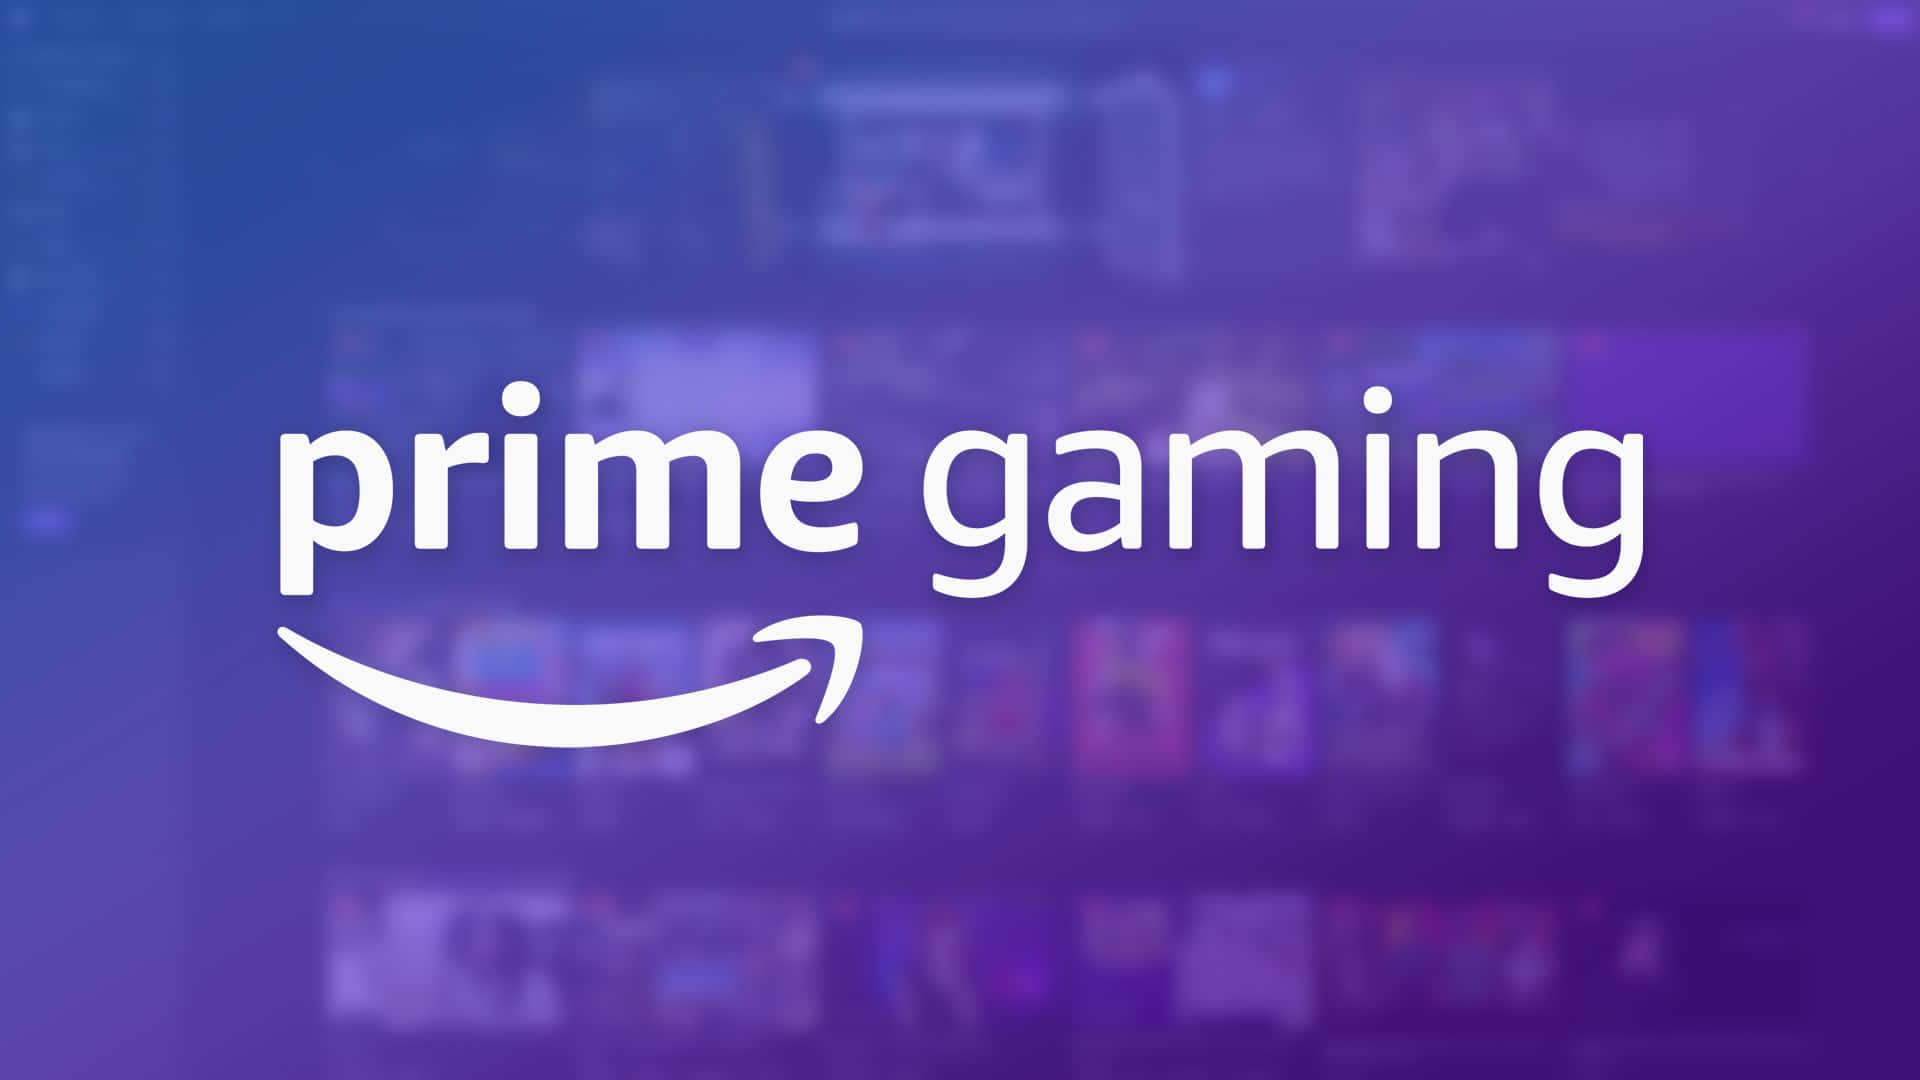 Amazon Prime Gaming - grafika promocyjna (źródło: Amazon)